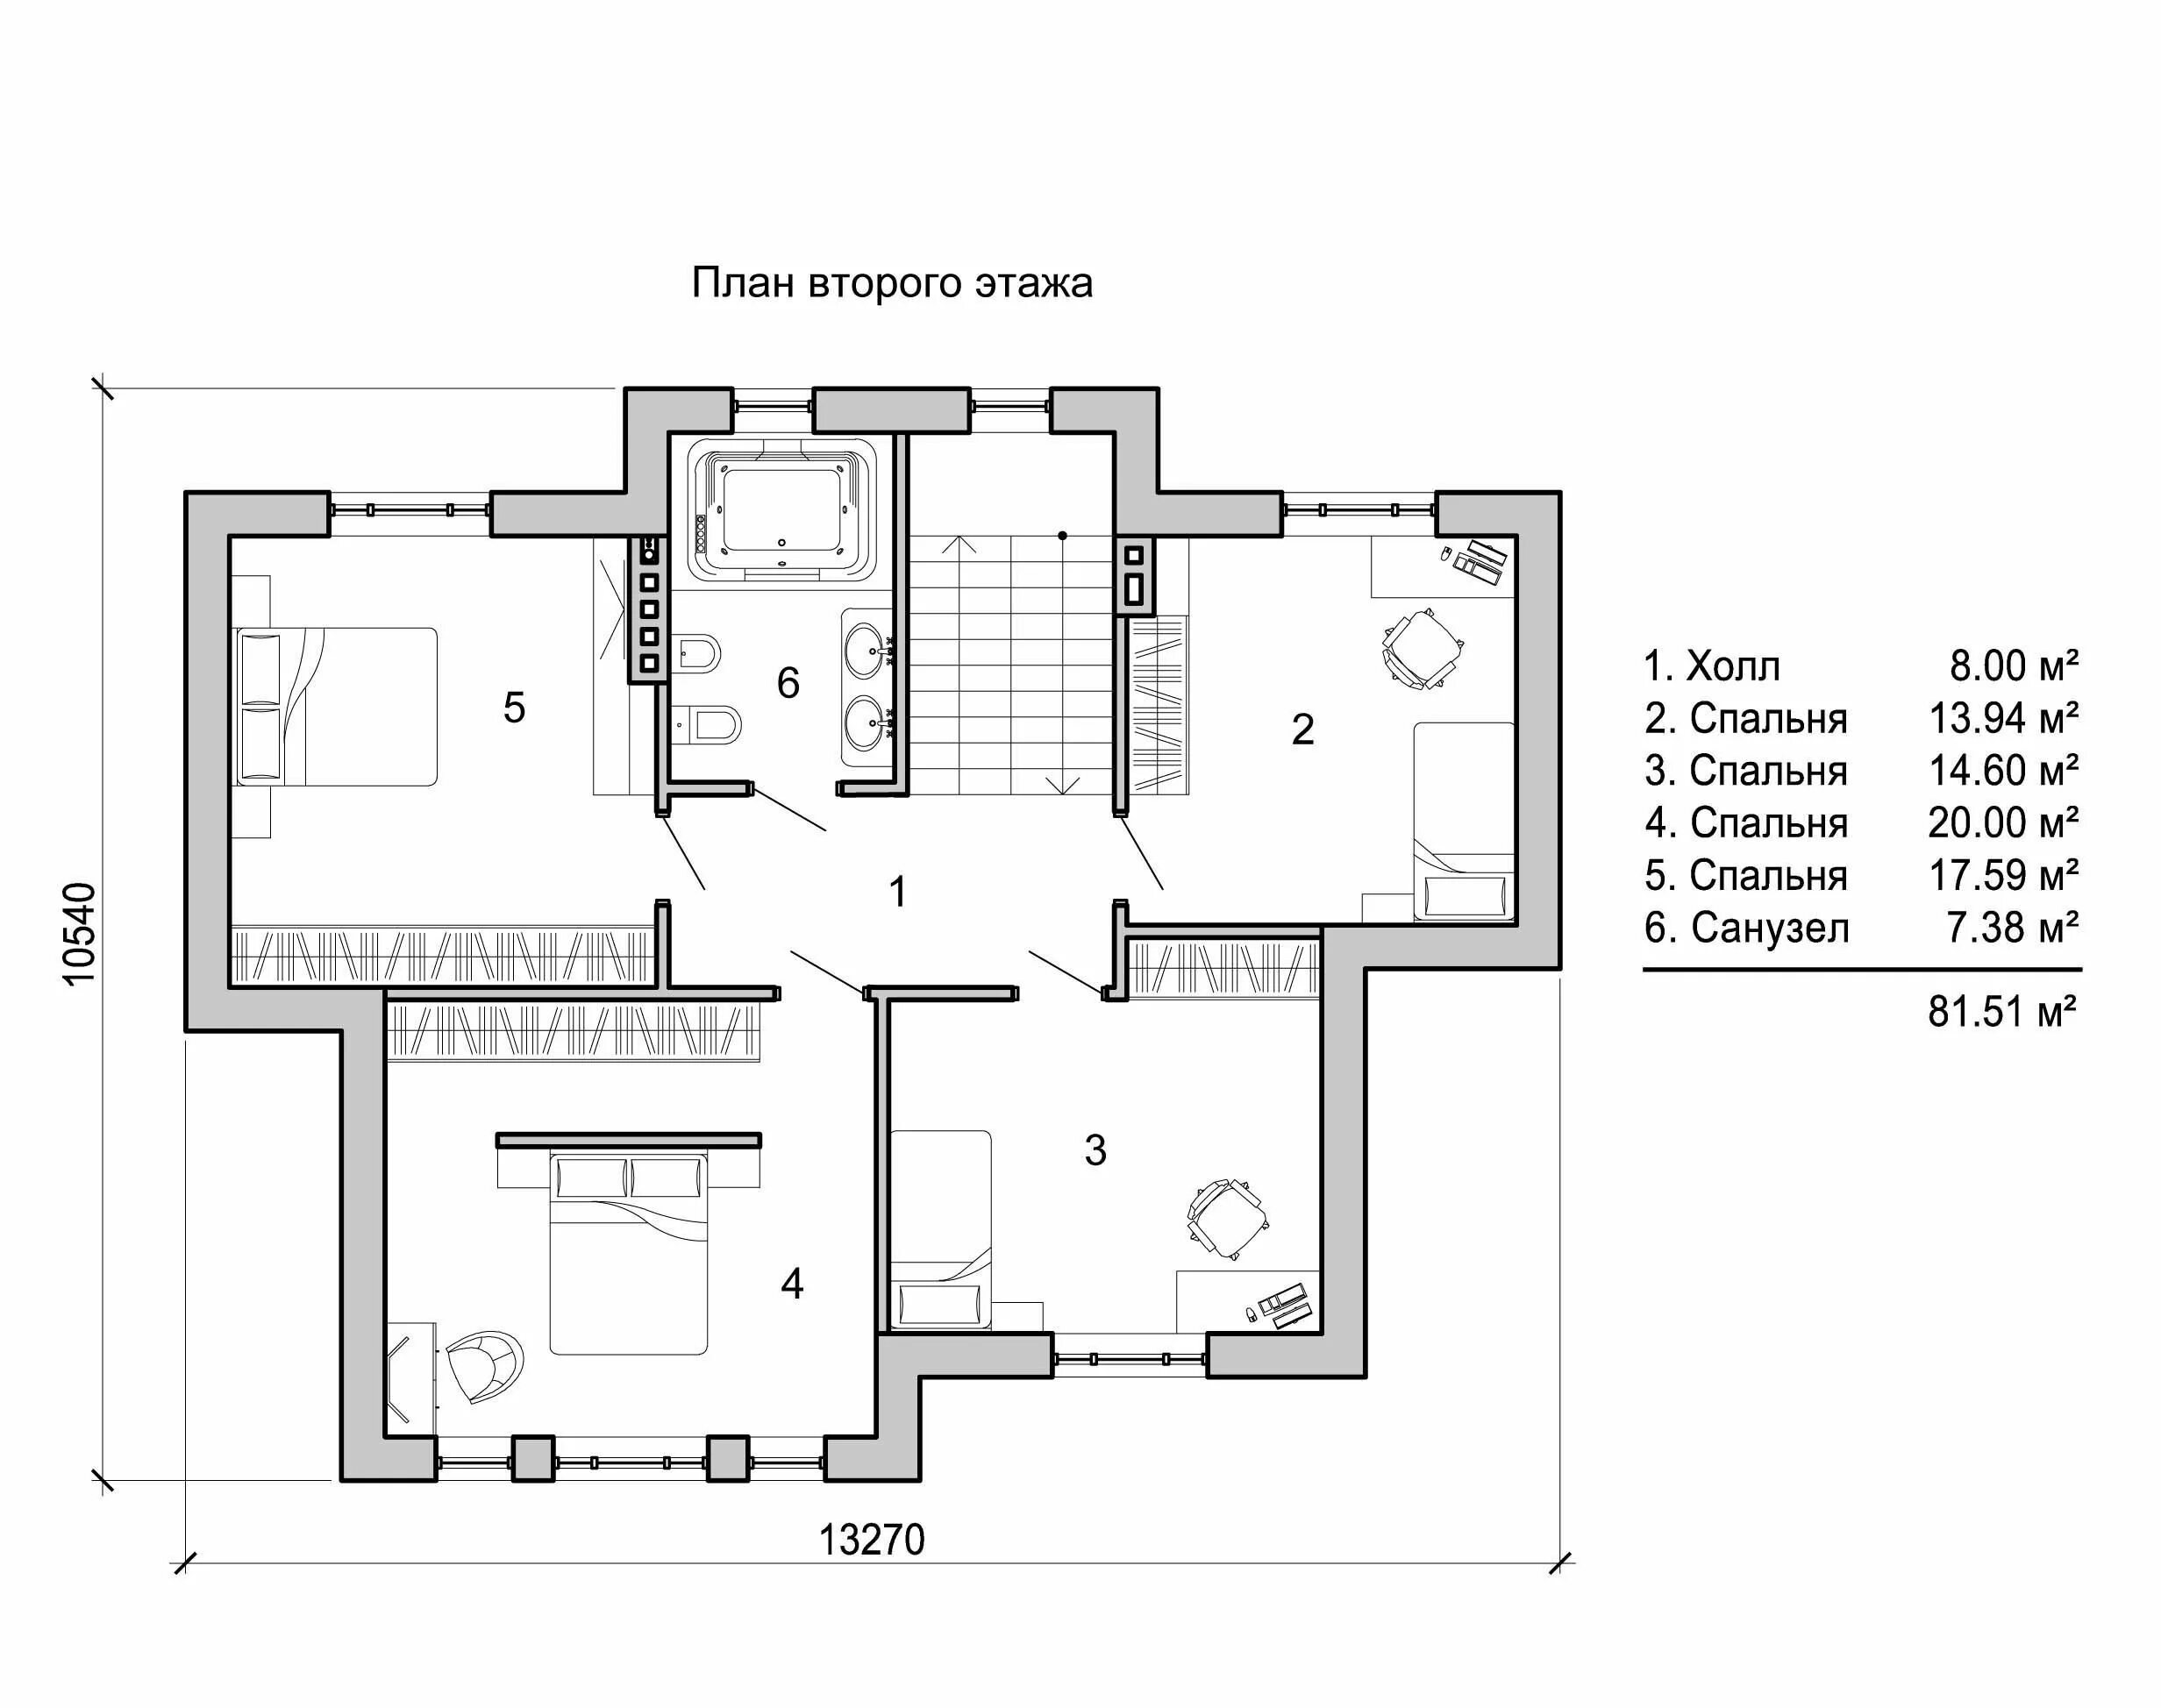 Планировка дома двухэтажного чертеж. Чертеж 2 этажного коттеджа. План 2 этажного дома в стиле Райта. Загородный дом чертеж. Чертежи загородных домов